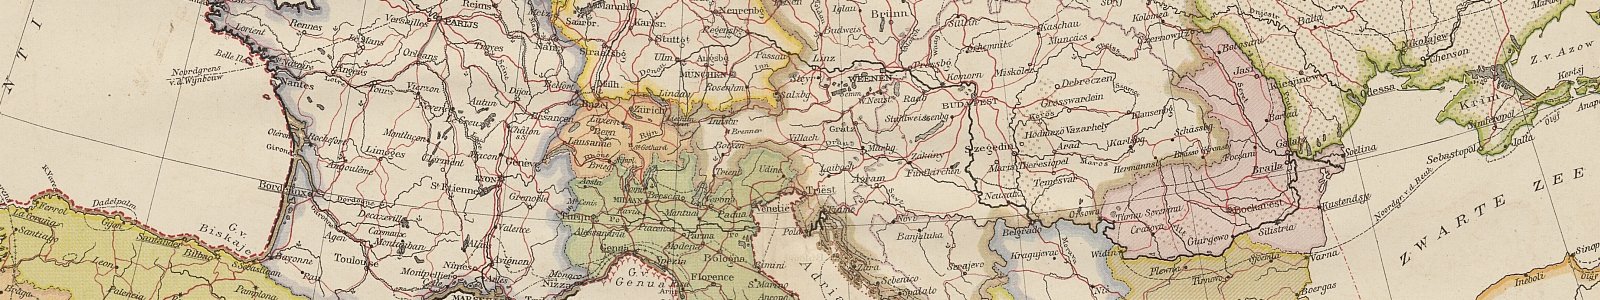 Detail kaart West-Europa 21e editie Bosatlas, 1915